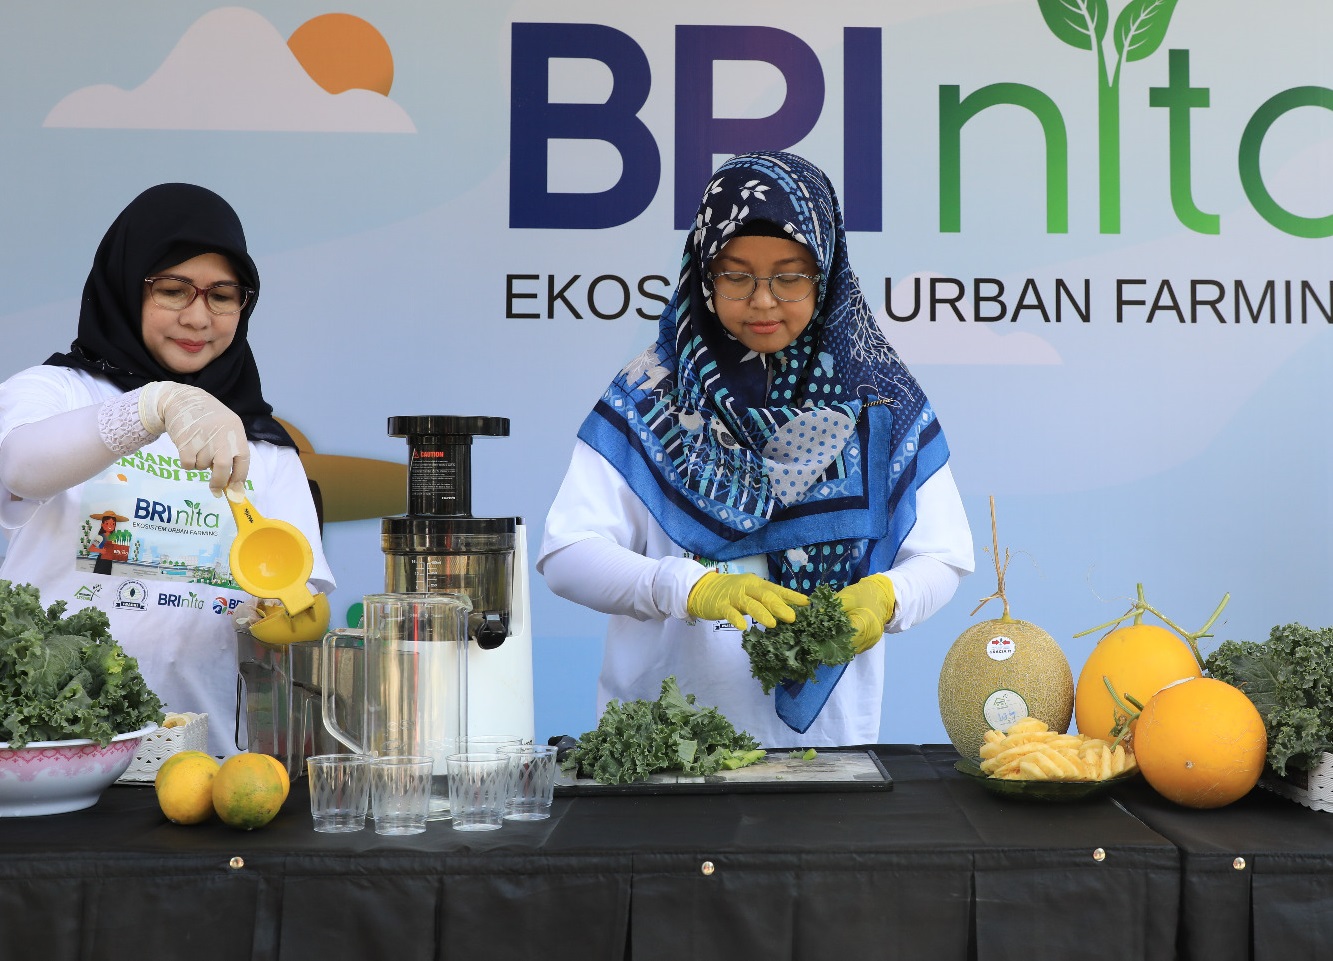 BRInita adalah program yang digagas BRI untuk mengajak masyarakat untuk lestarikan lingkungan yang dilksanakan di kawasan padat penduduk.